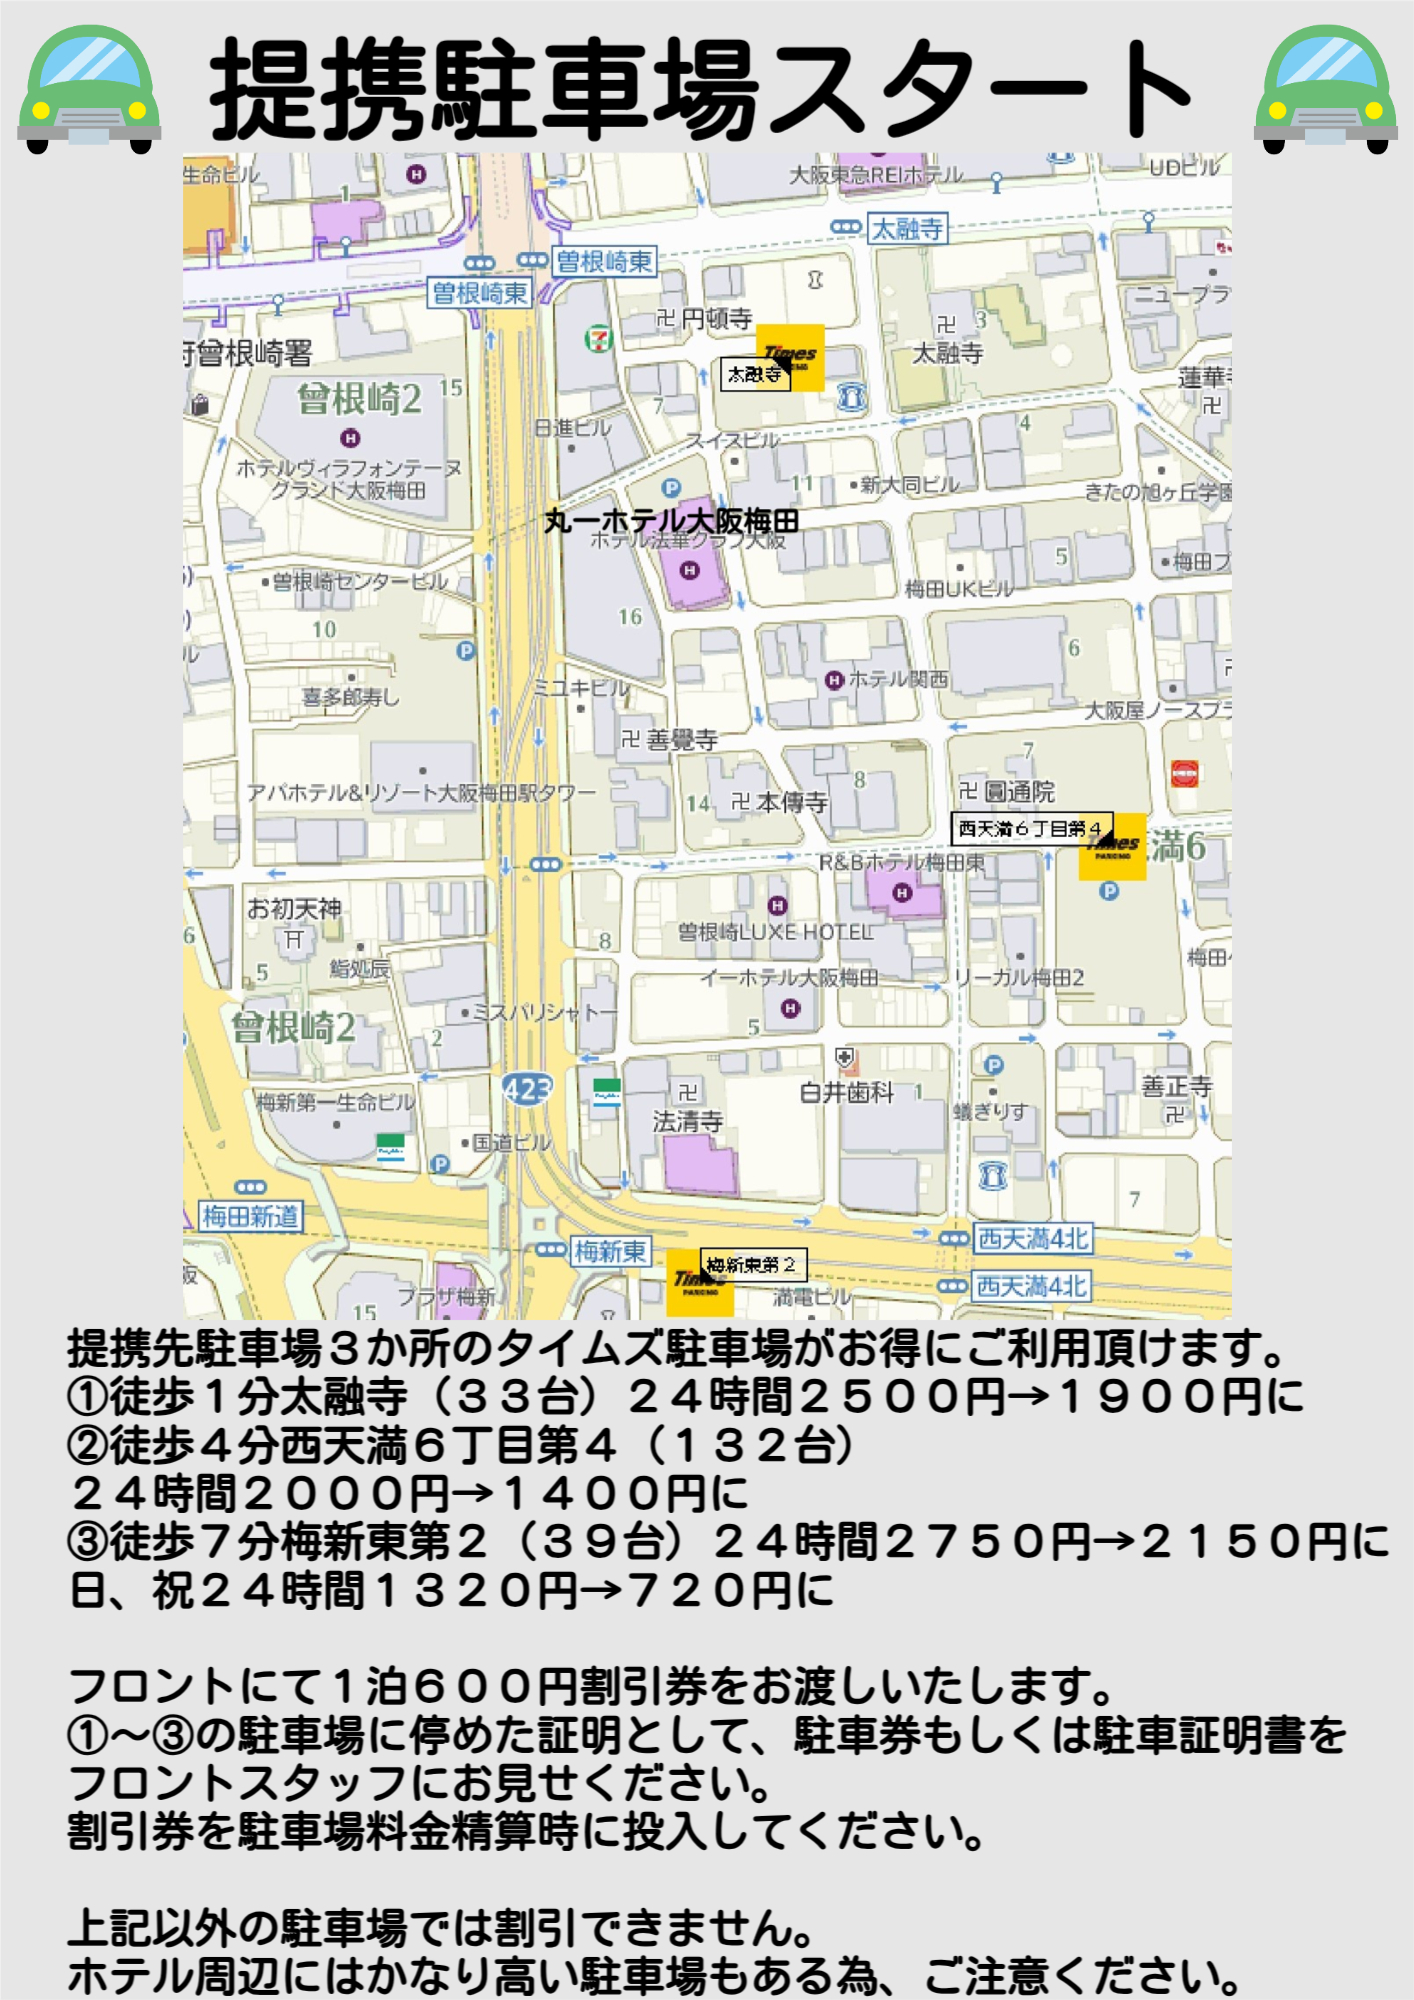 提携駐車場がスタート、１泊６００円割引券をお渡しします。